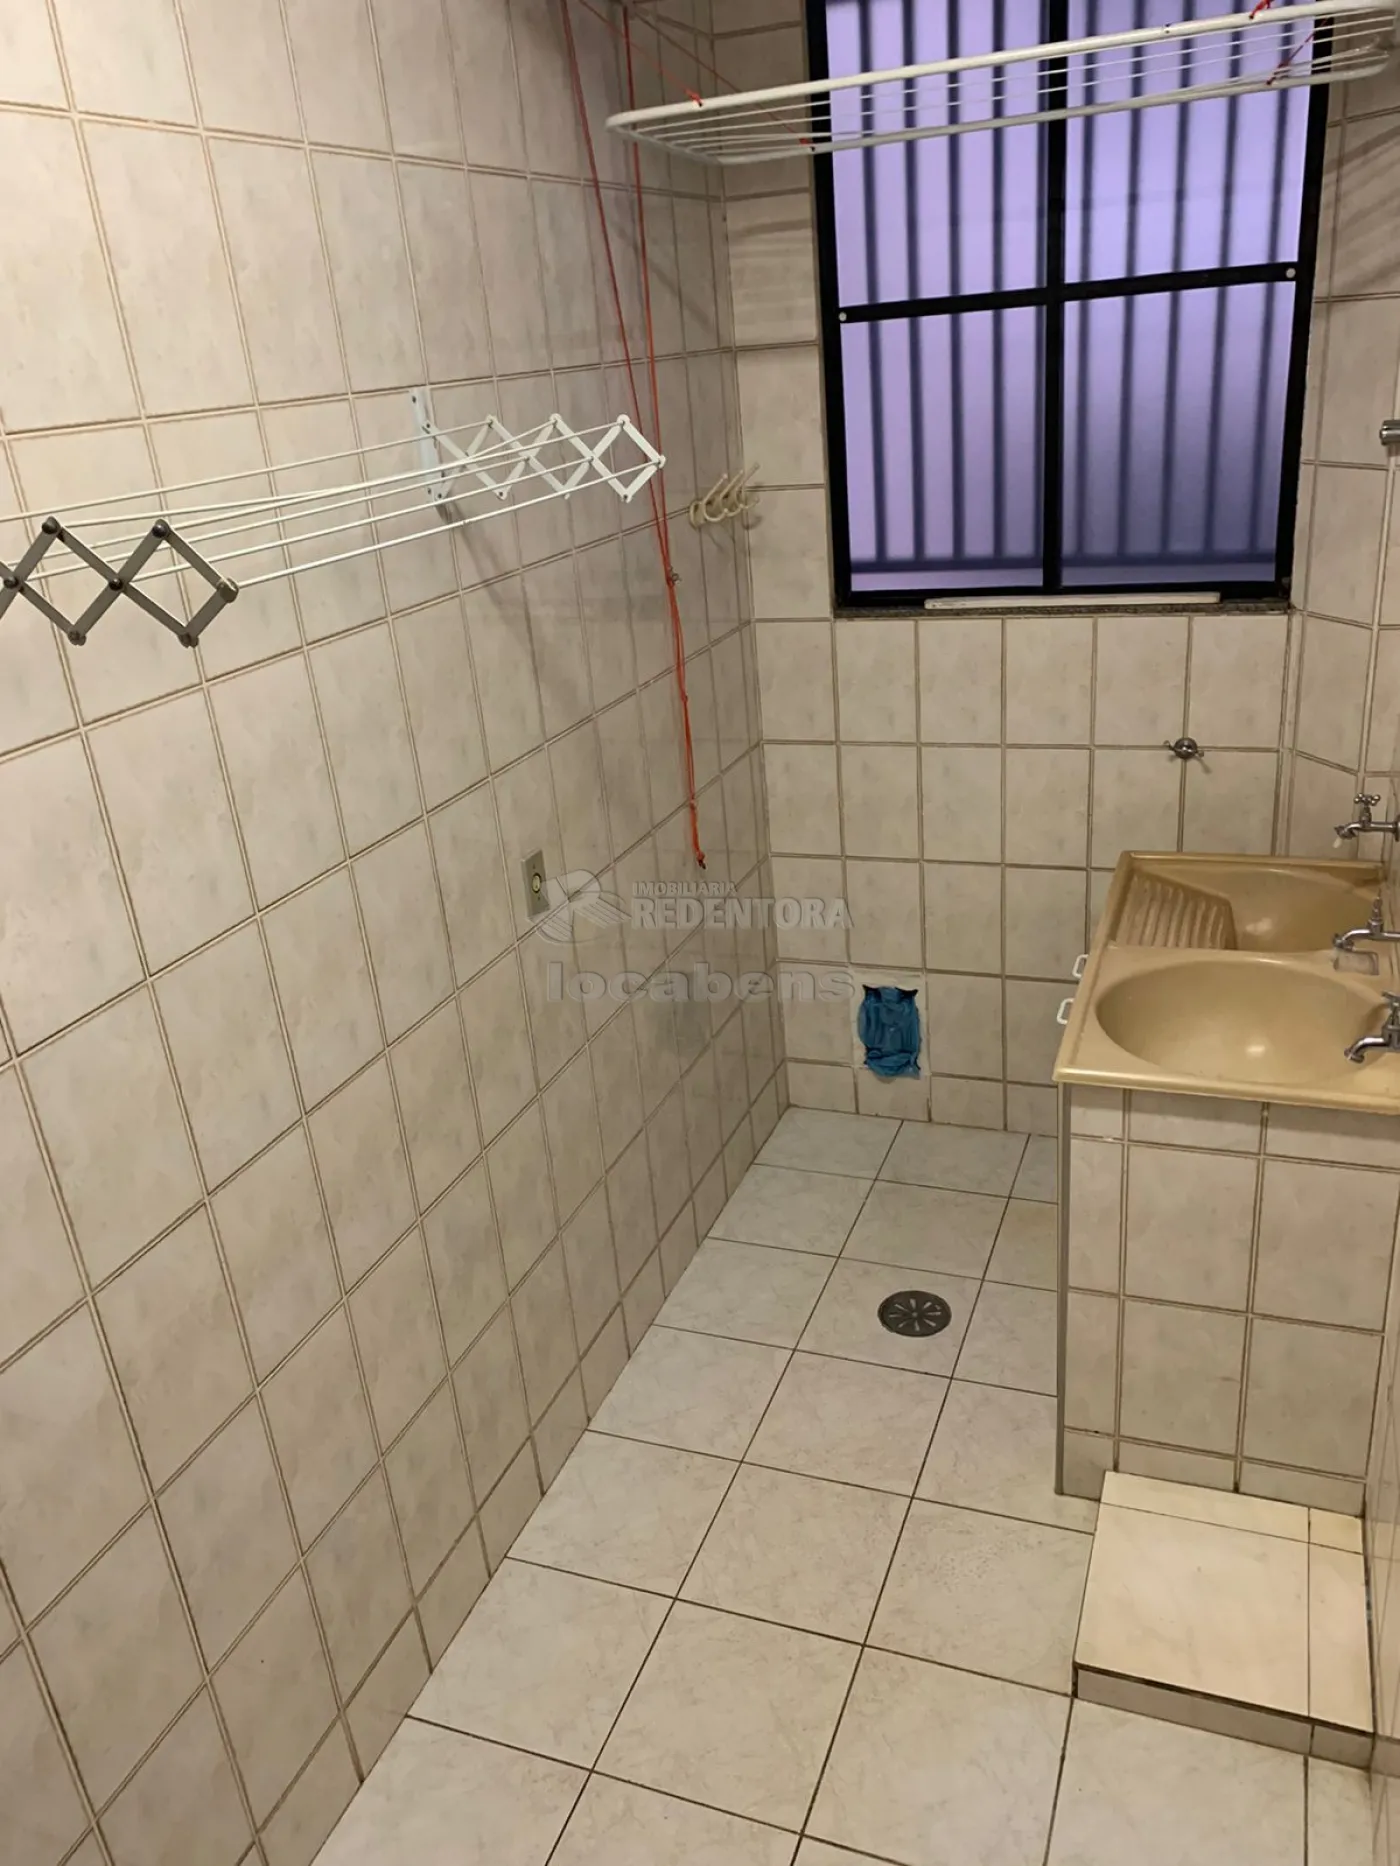 Comprar Apartamento / Padrão em São José do Rio Preto apenas R$ 265.000,00 - Foto 10